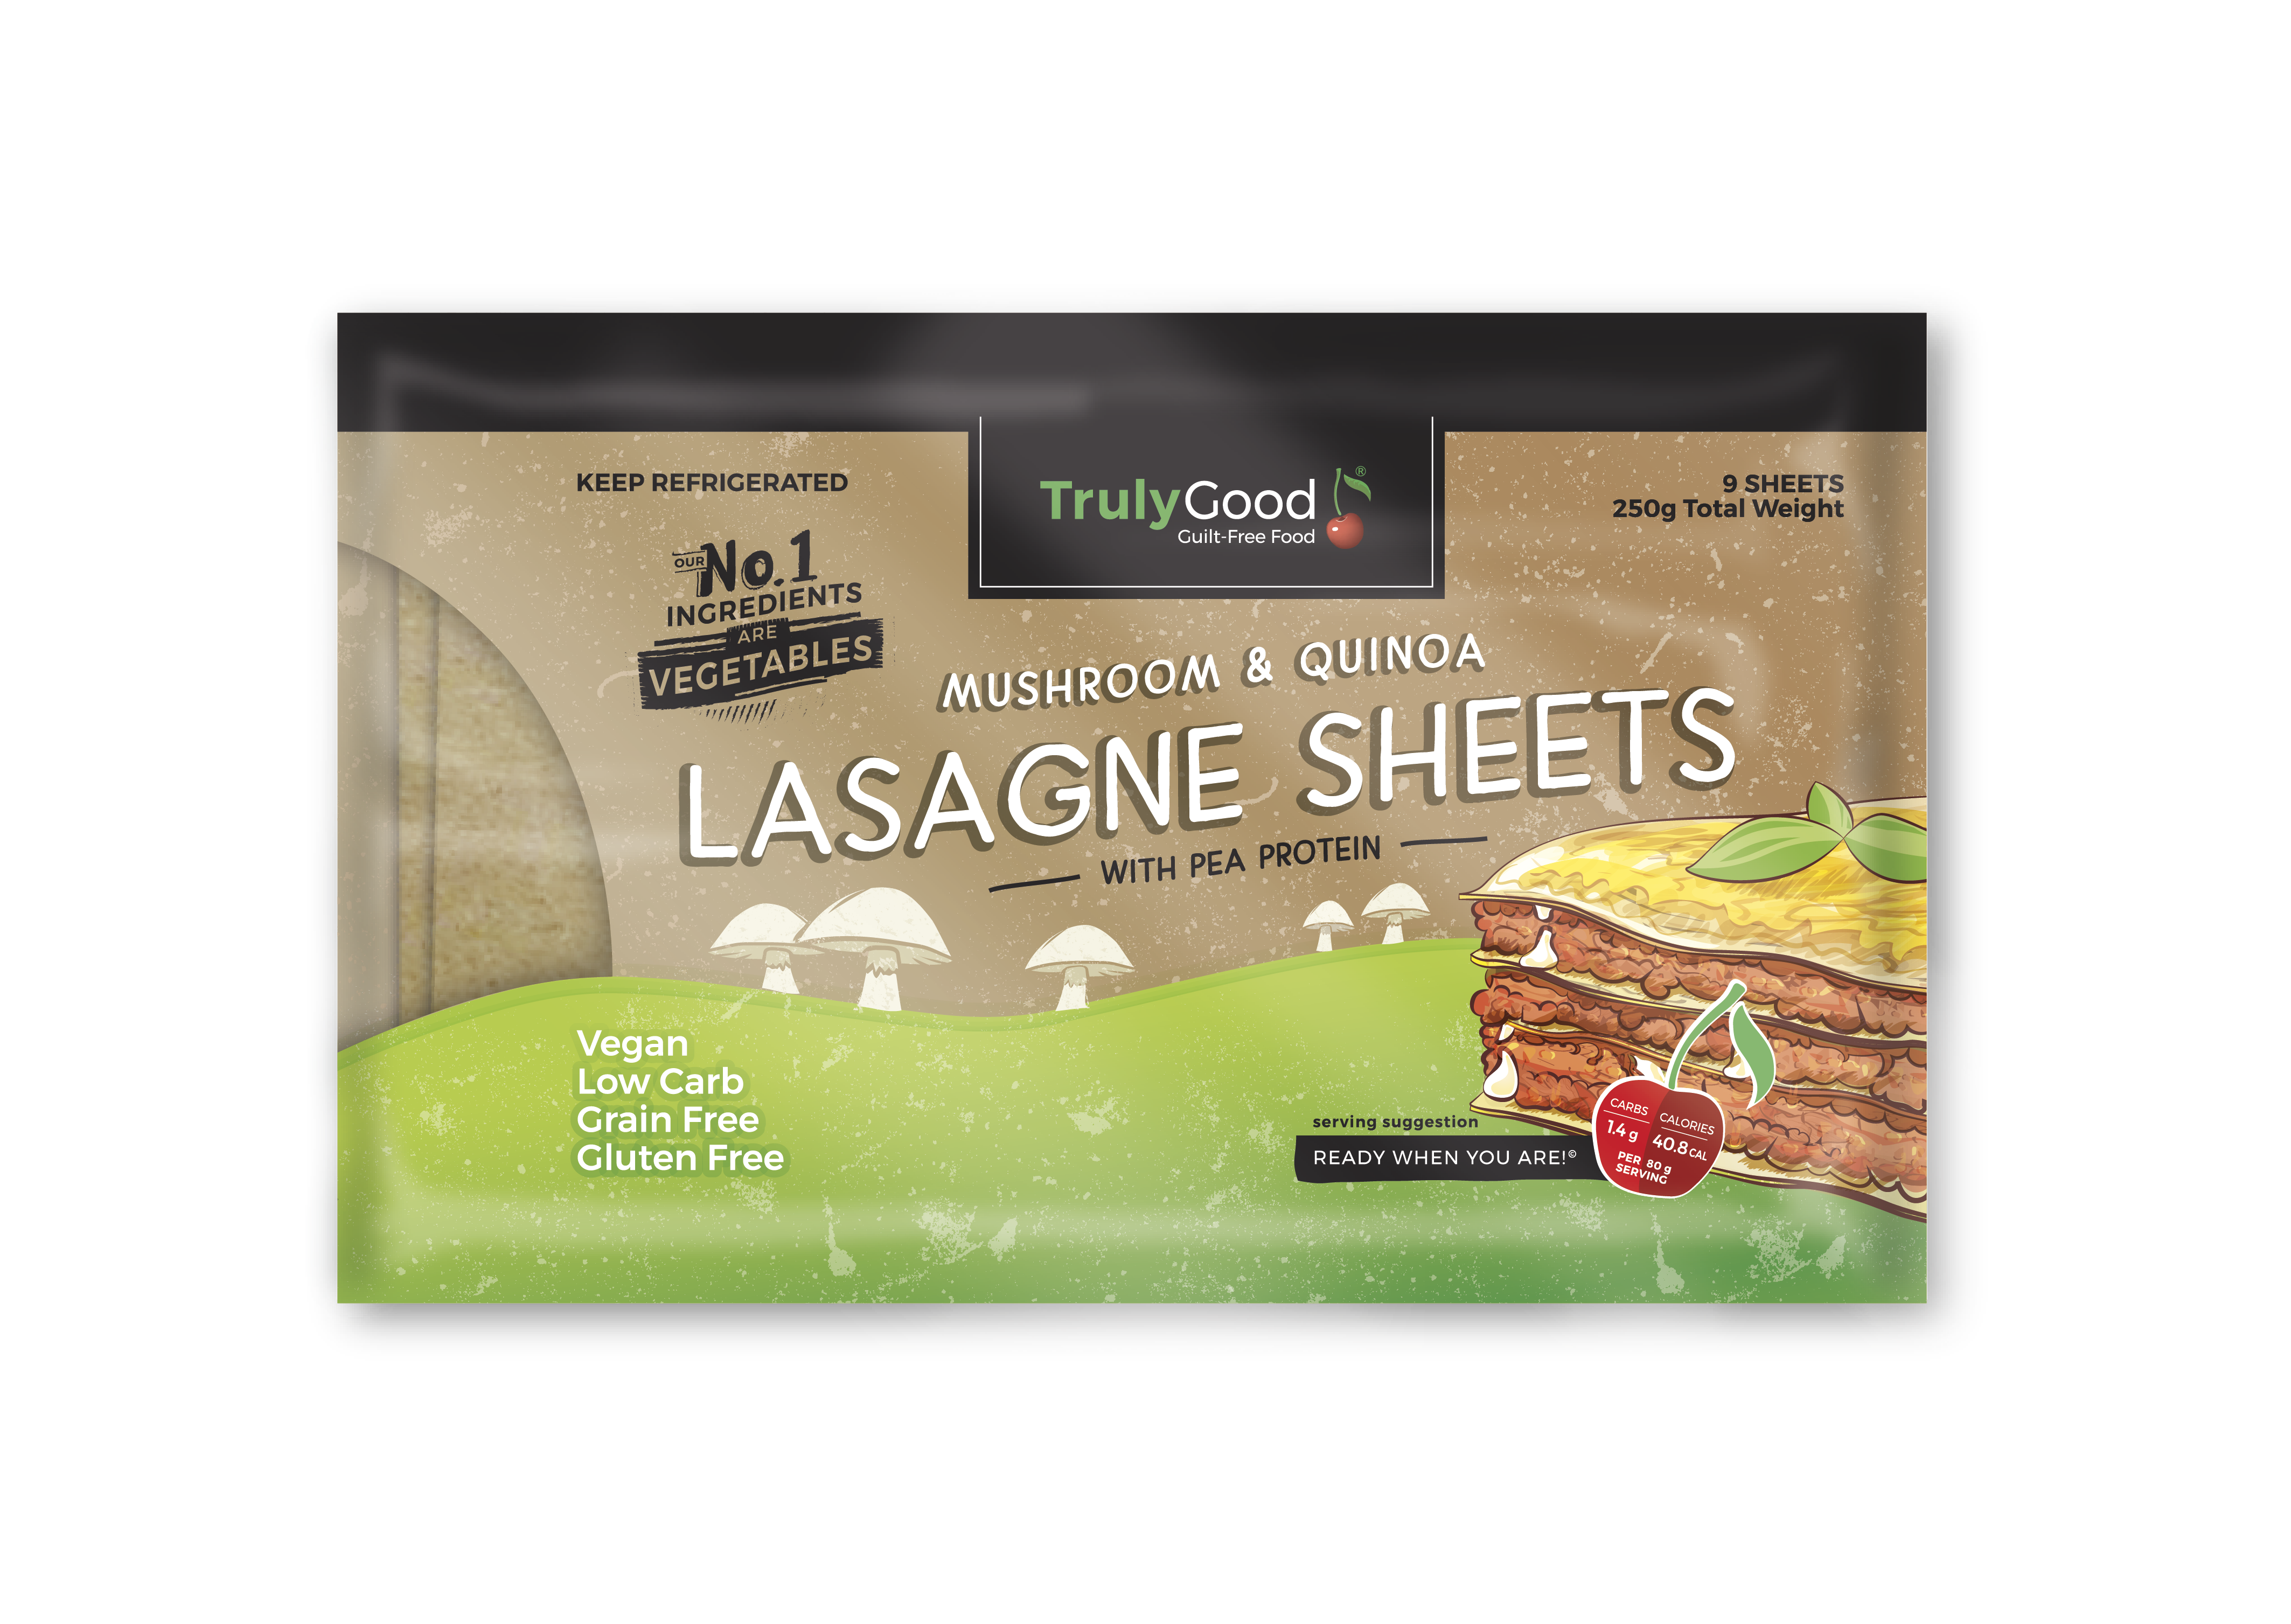 Mushroom & Quinoa Lasagne Sheets: 9 sheets